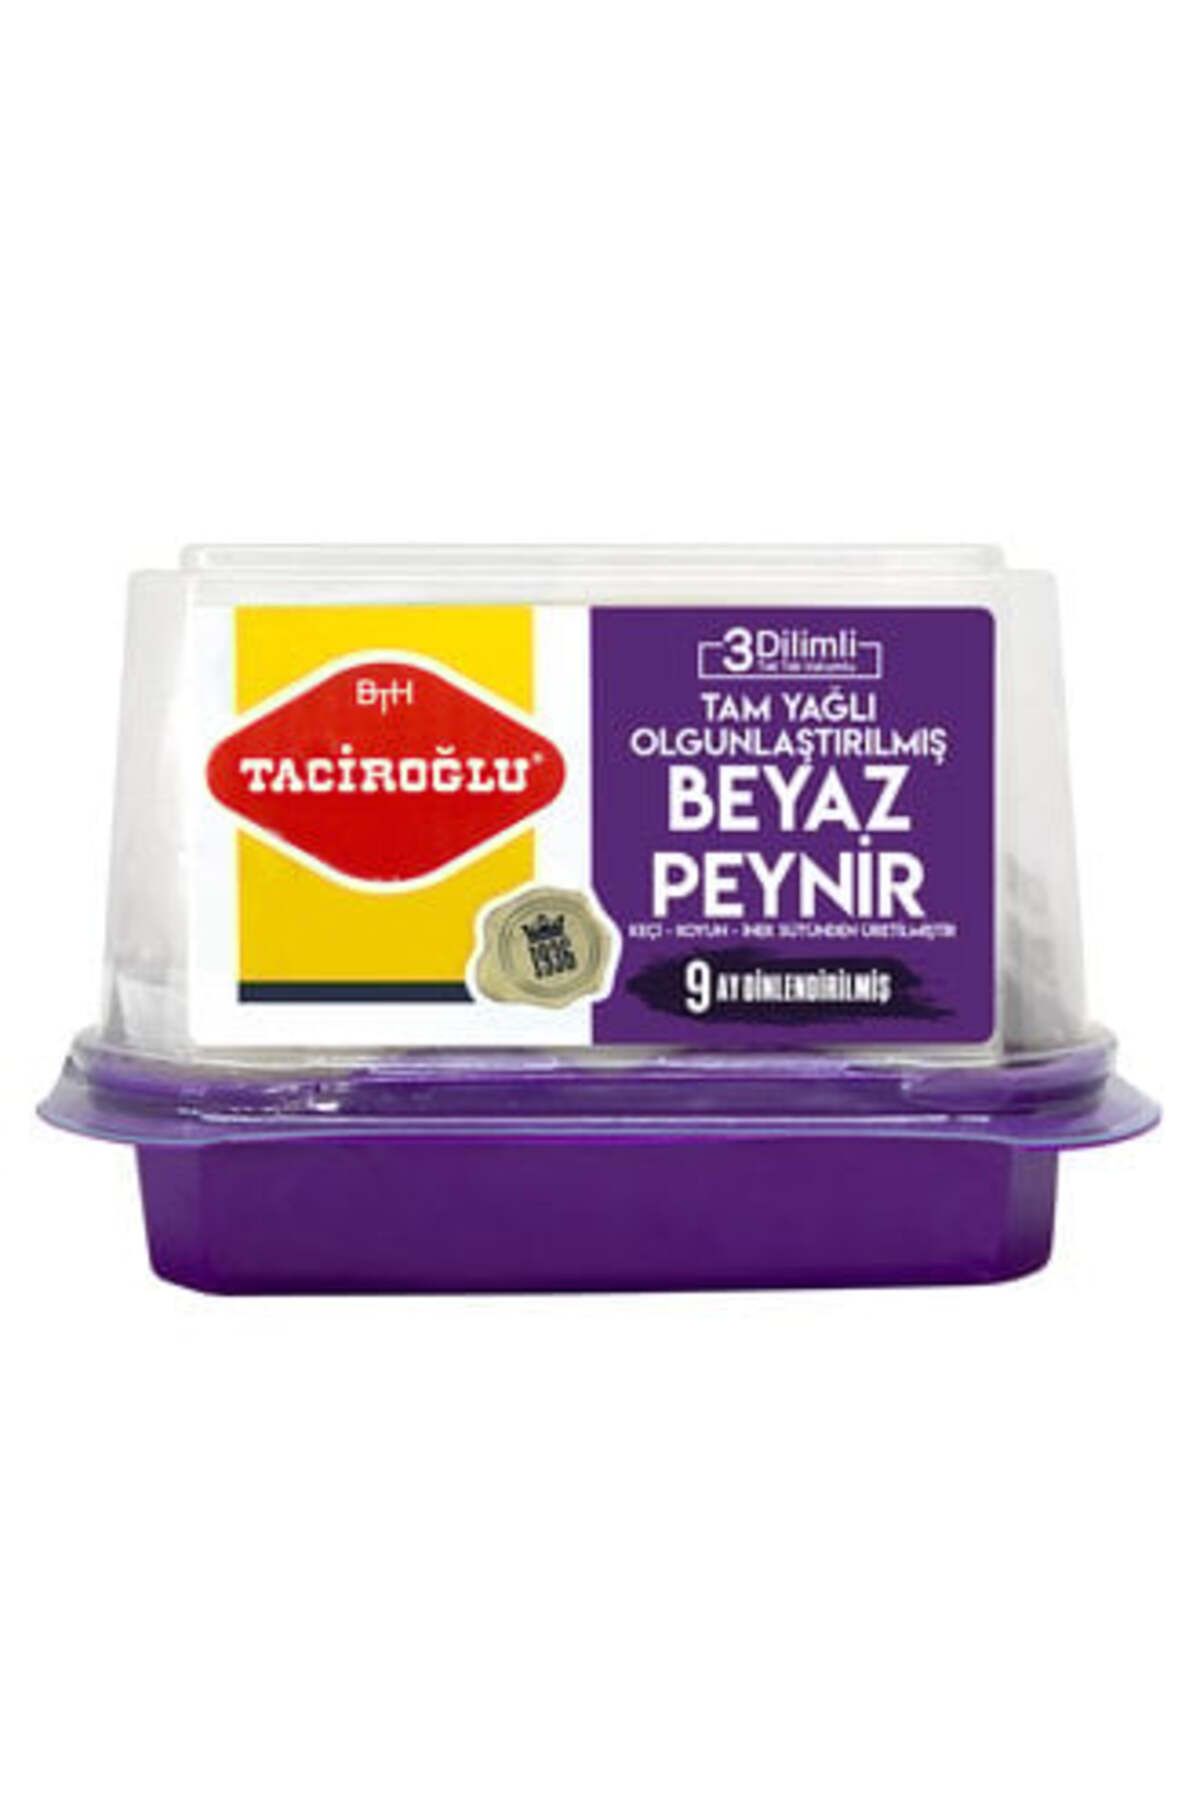 Taciroğlu ( MİNİ TEREYAĞ HEDİYE ) Taciroğlu 3 Dilimli Keçi Peyniri 450Gr